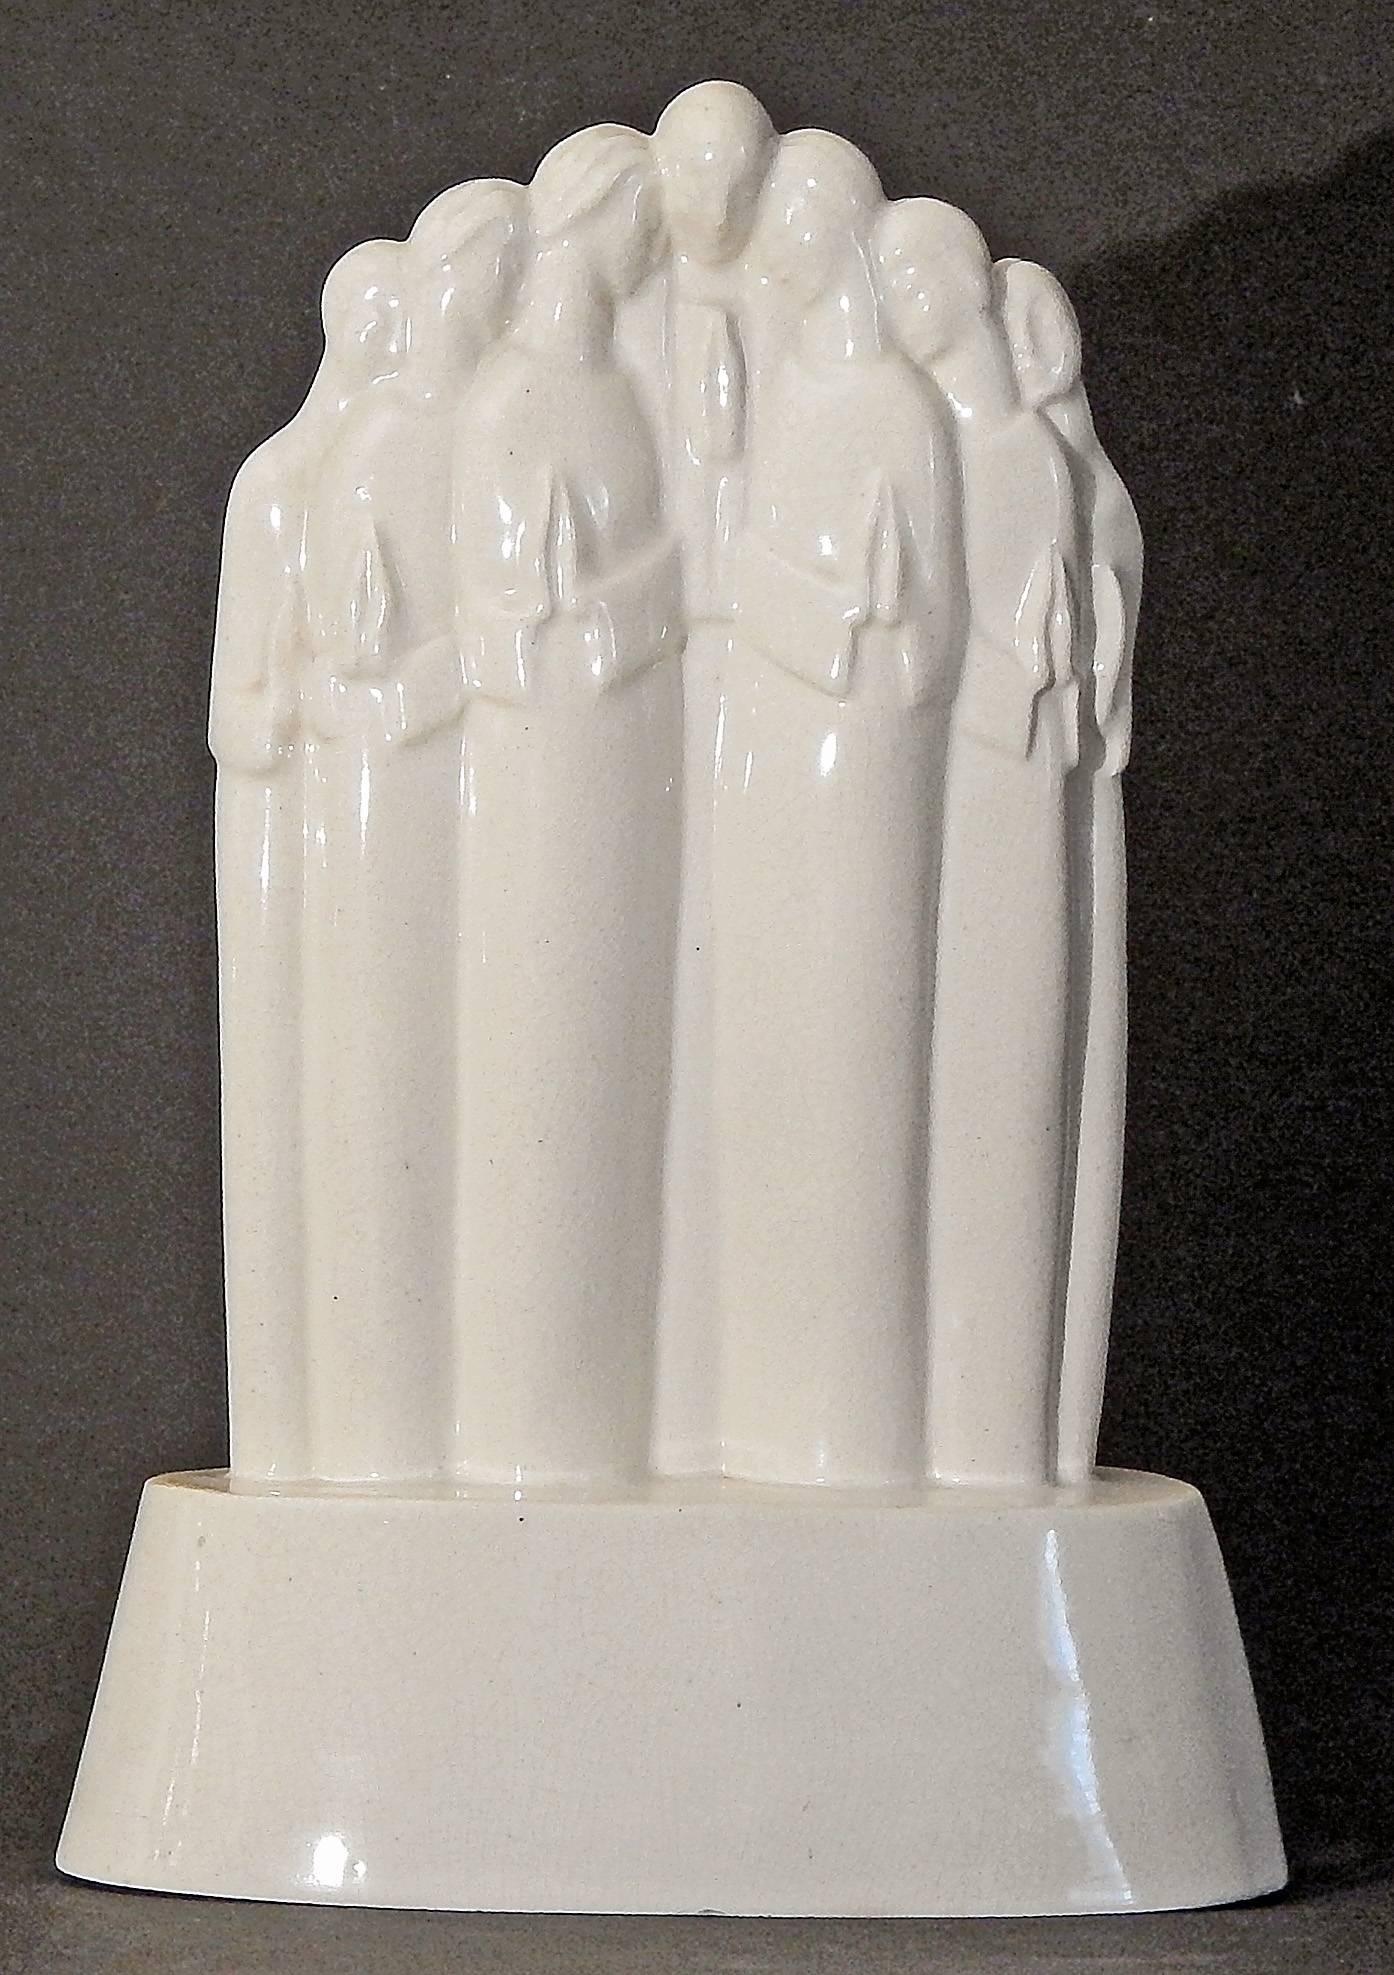 L'une des sculptures les plus rares et les plus importantes issues de l'école de céramique ARKO créée par Alexander Archipenko à Woodstock, dans l'État de New York, ce groupe stylisé de personnages en prière a été créé par Lu Duble. Archipenko a